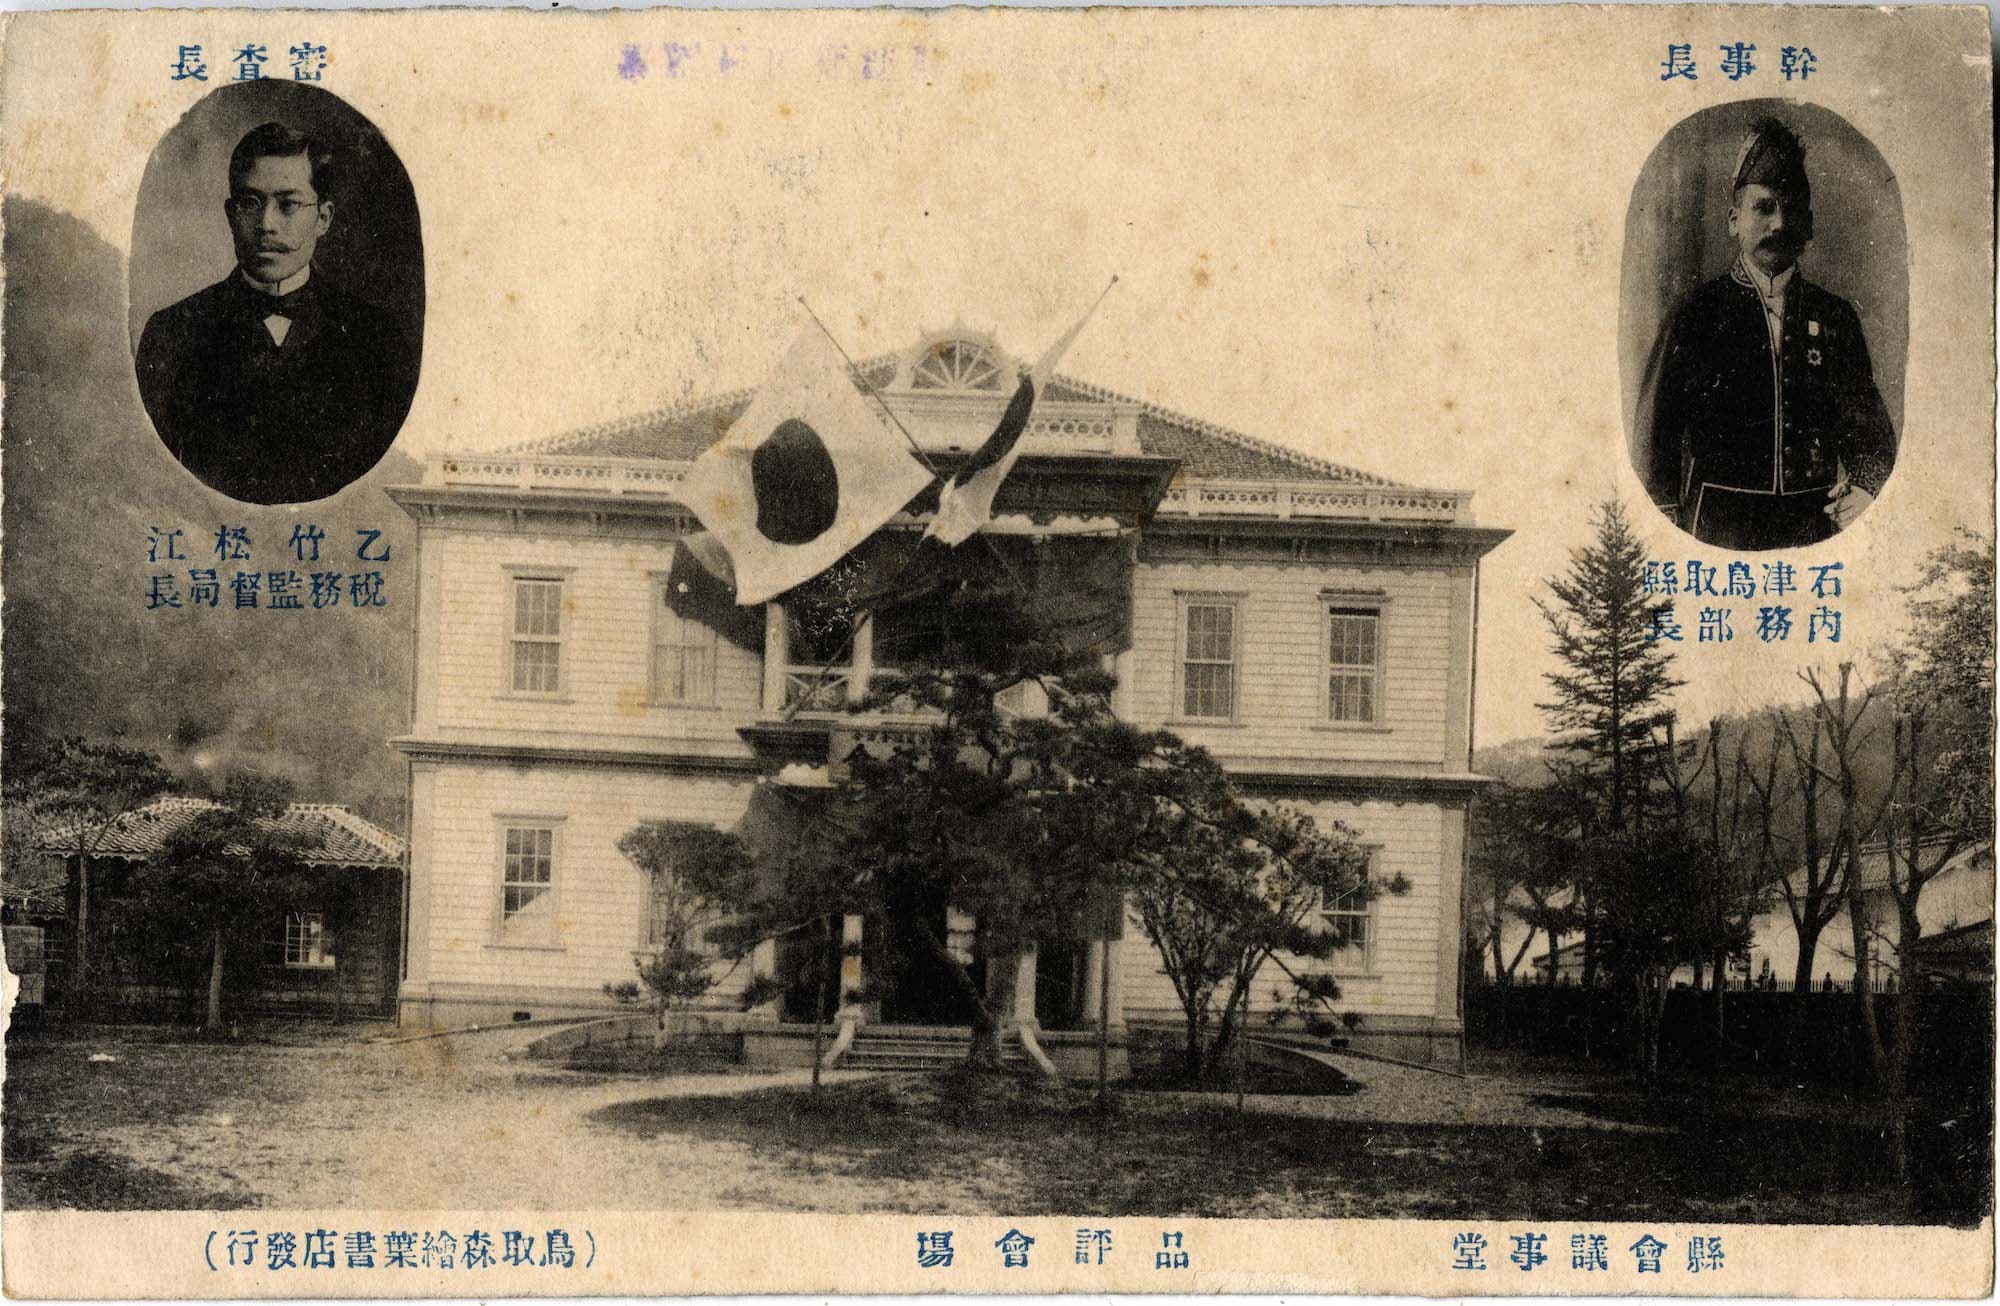 鳥取県会議事堂's image 1